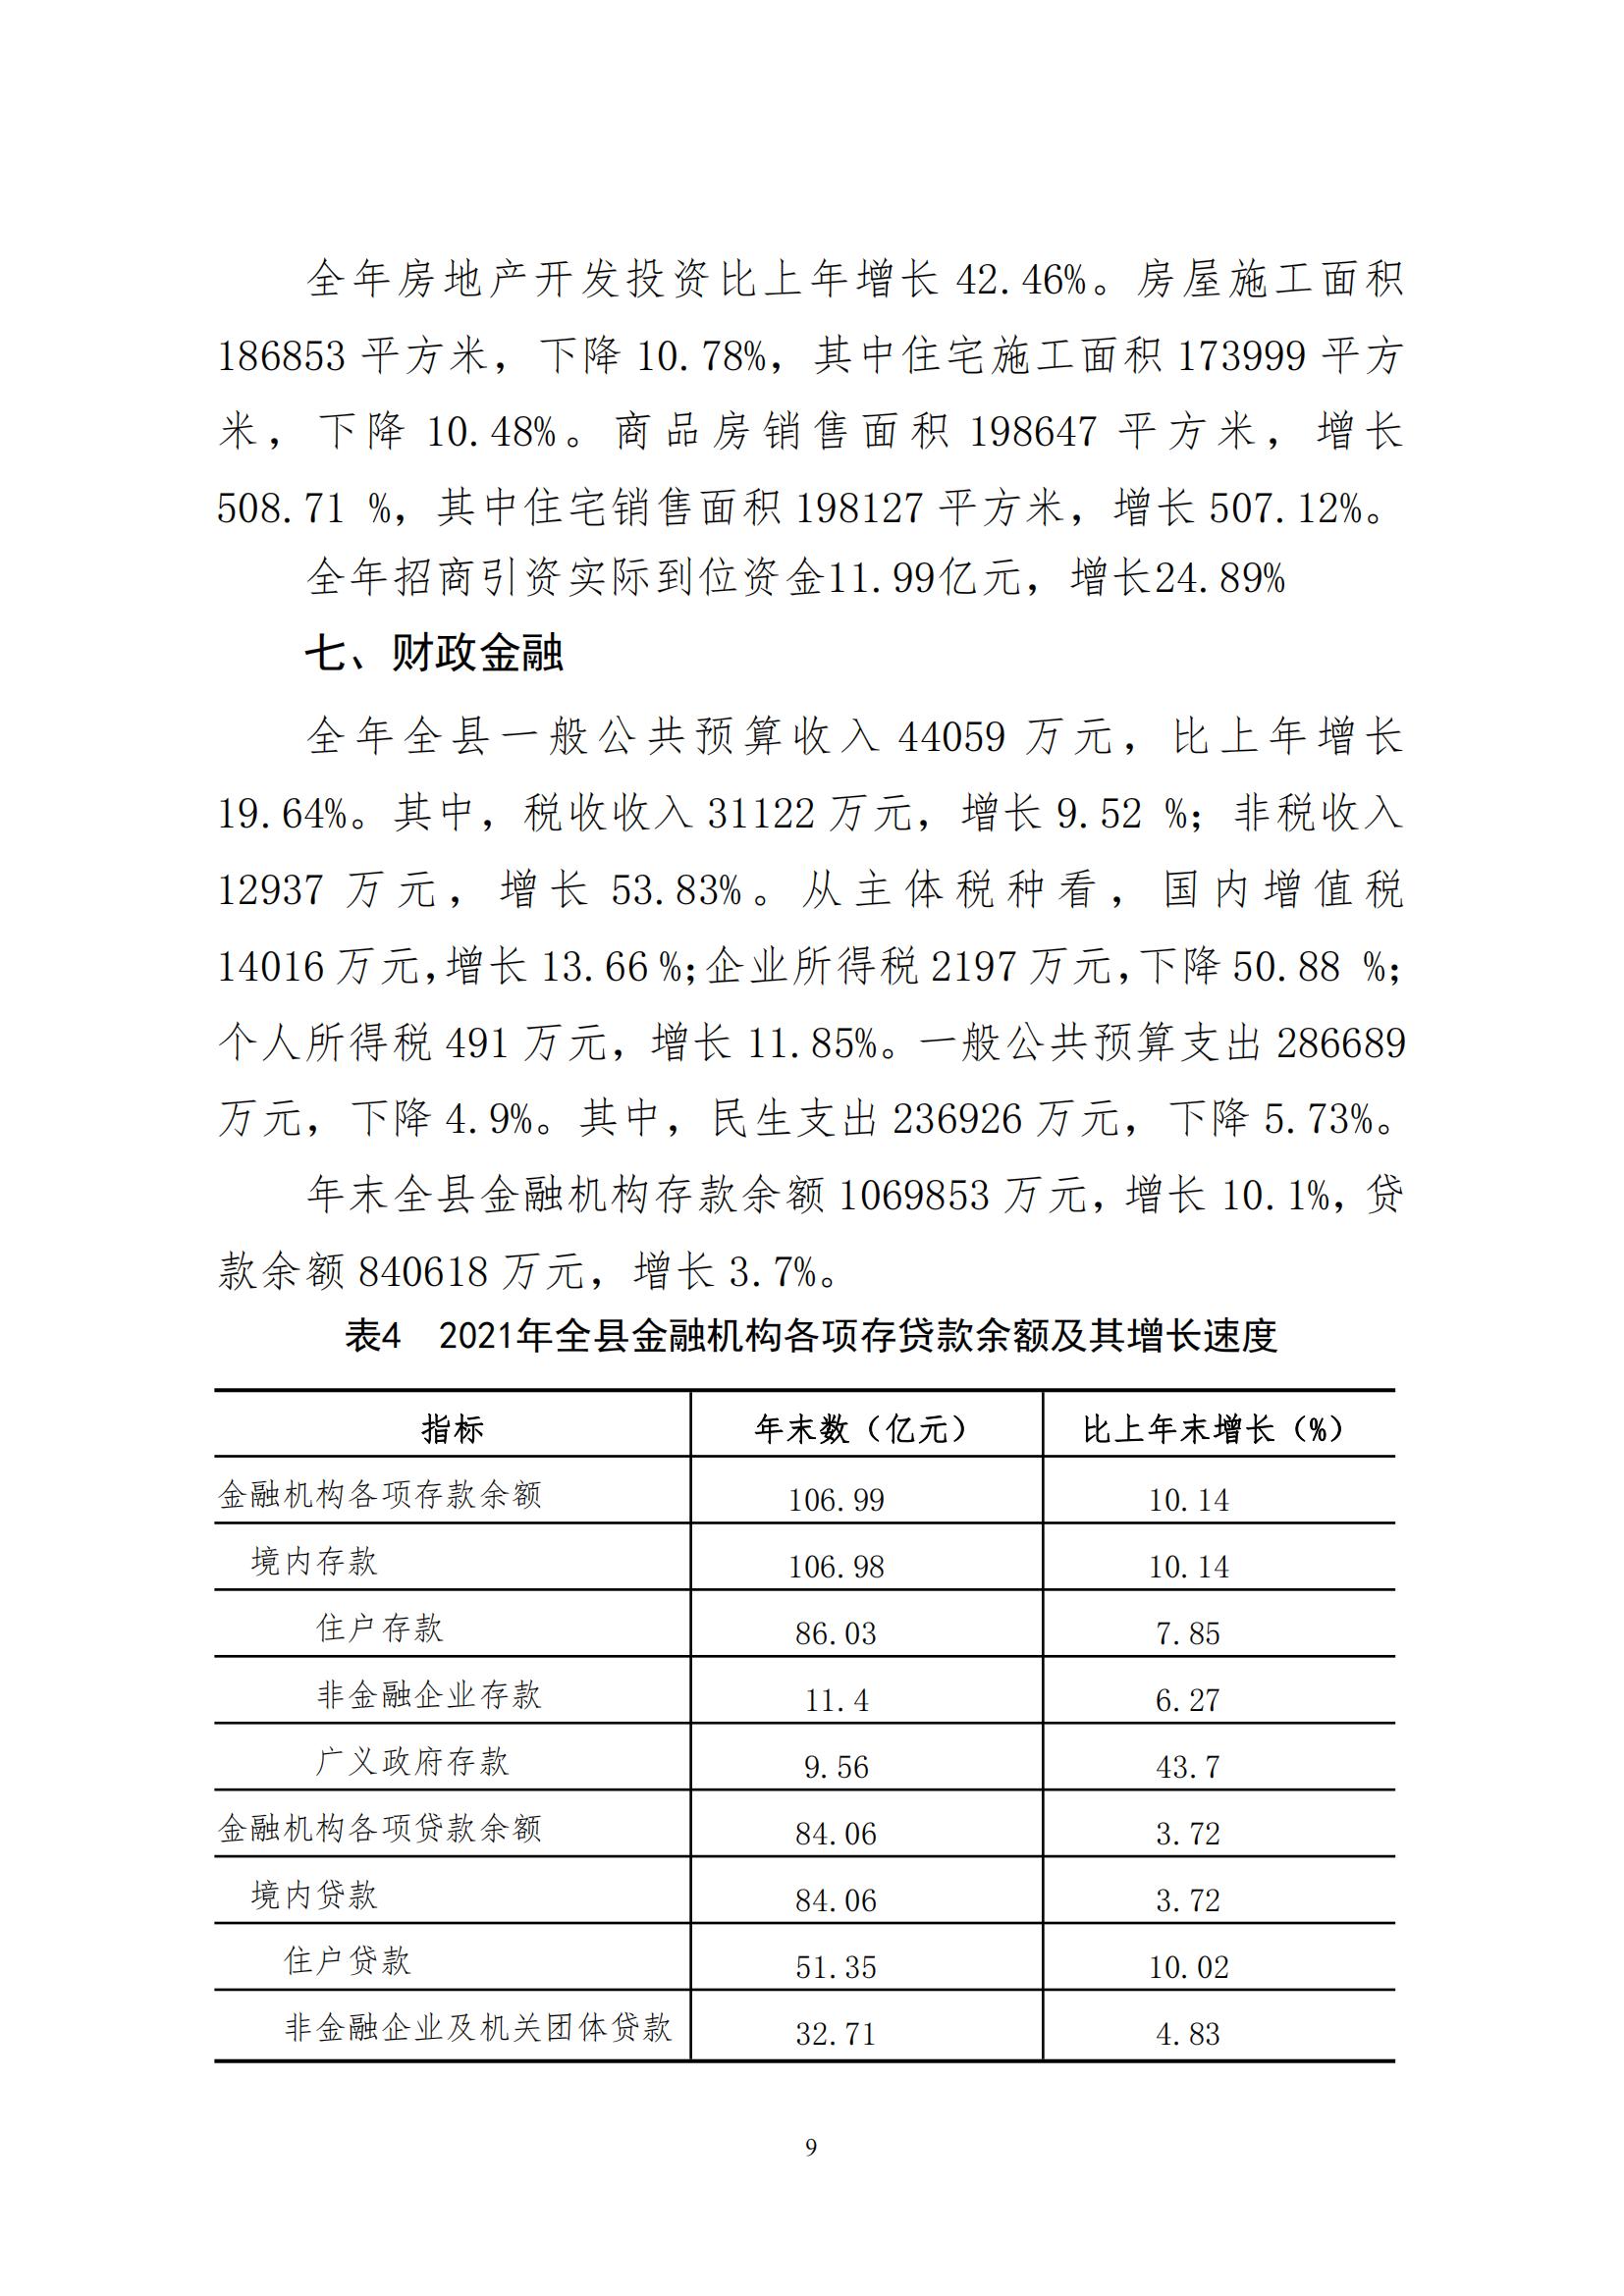 2021年永靖县国民经济和社会发展统计公报_08.jpg